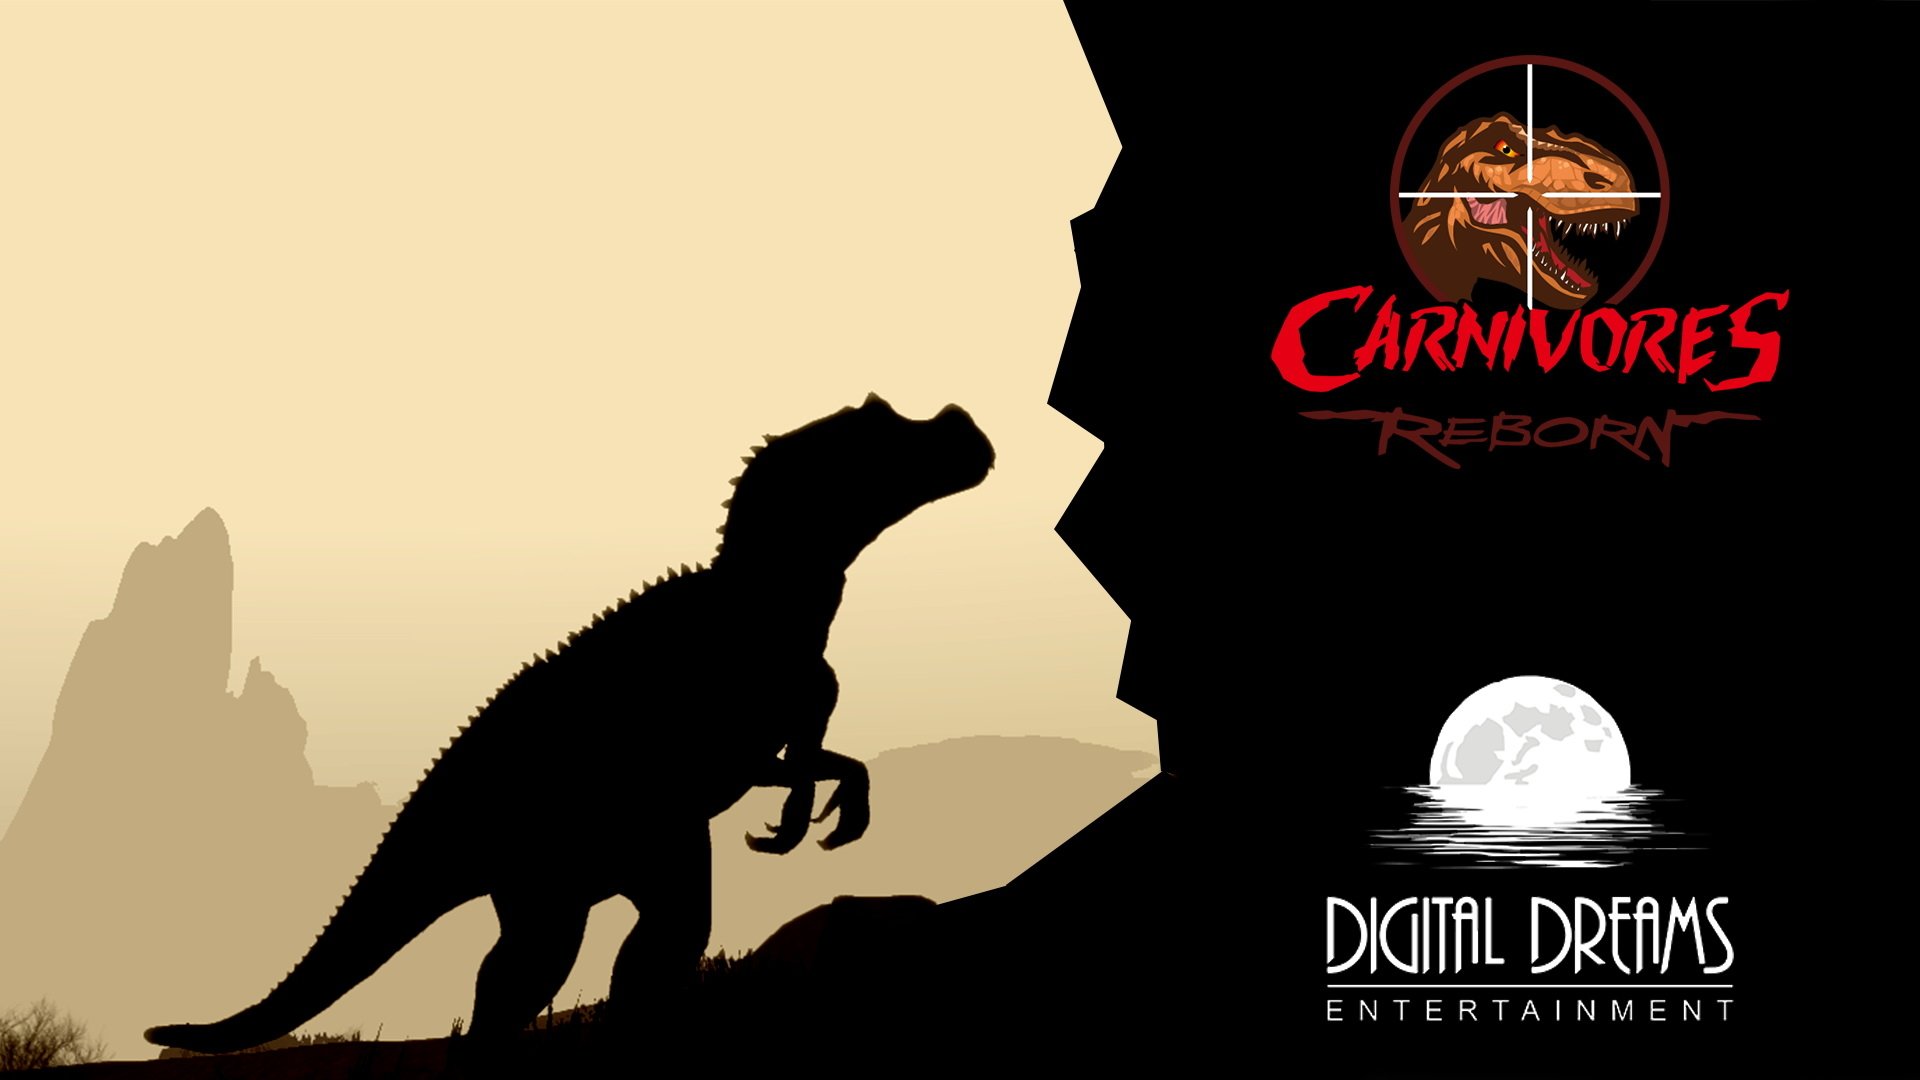 Carnivores: Dinosaur Hunter Reborn Wallpapers